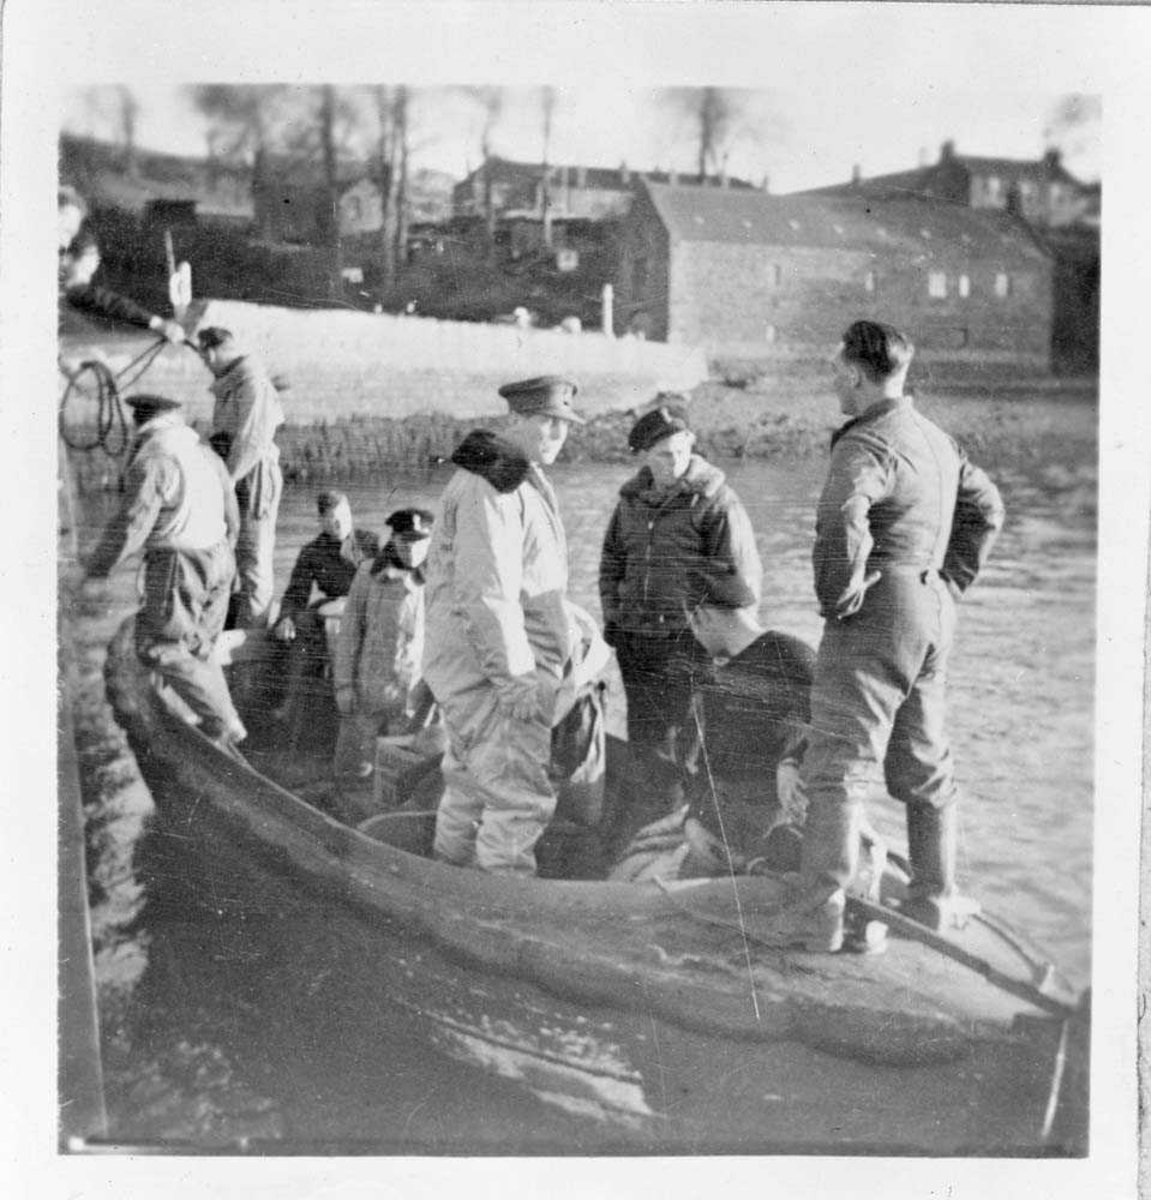 Nordahl Grieg står midt i bildet  i lys flydress med mørk krage og hærens uniformslue. Til høyre for ham står muligens Jon O. Roe i mørk flygerjakke og marinens uniformslue. Båten de står i skal frakte dem ut til et Catalina-fly.